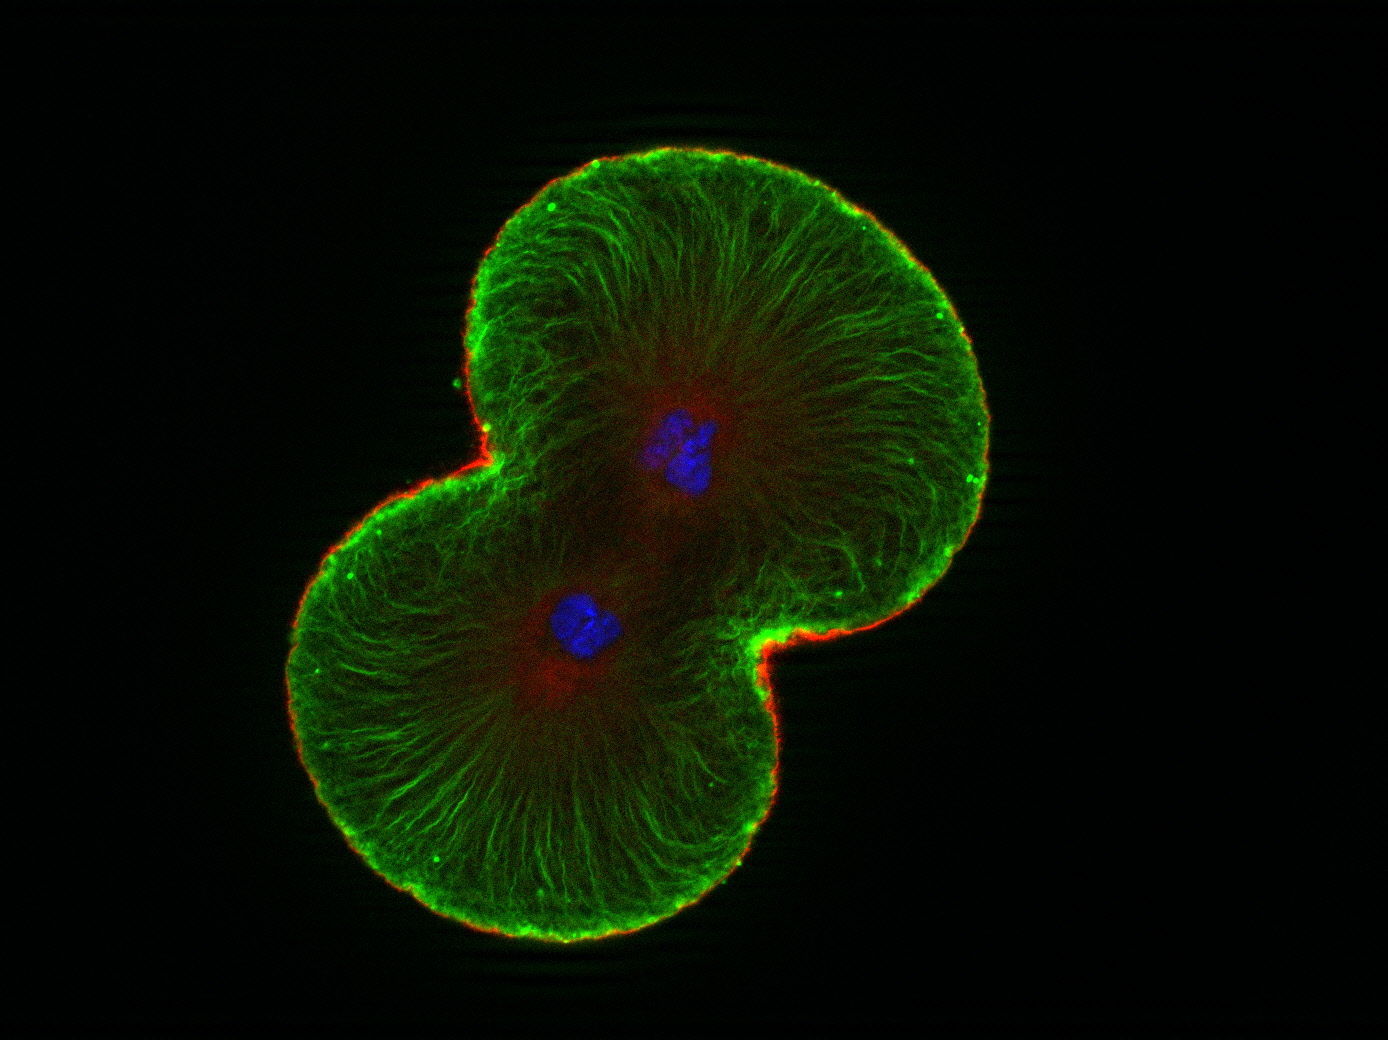 ¿Cuál es el proceso por el cual a partir de una célula madre, se obtienen dos células hijas idénticas?